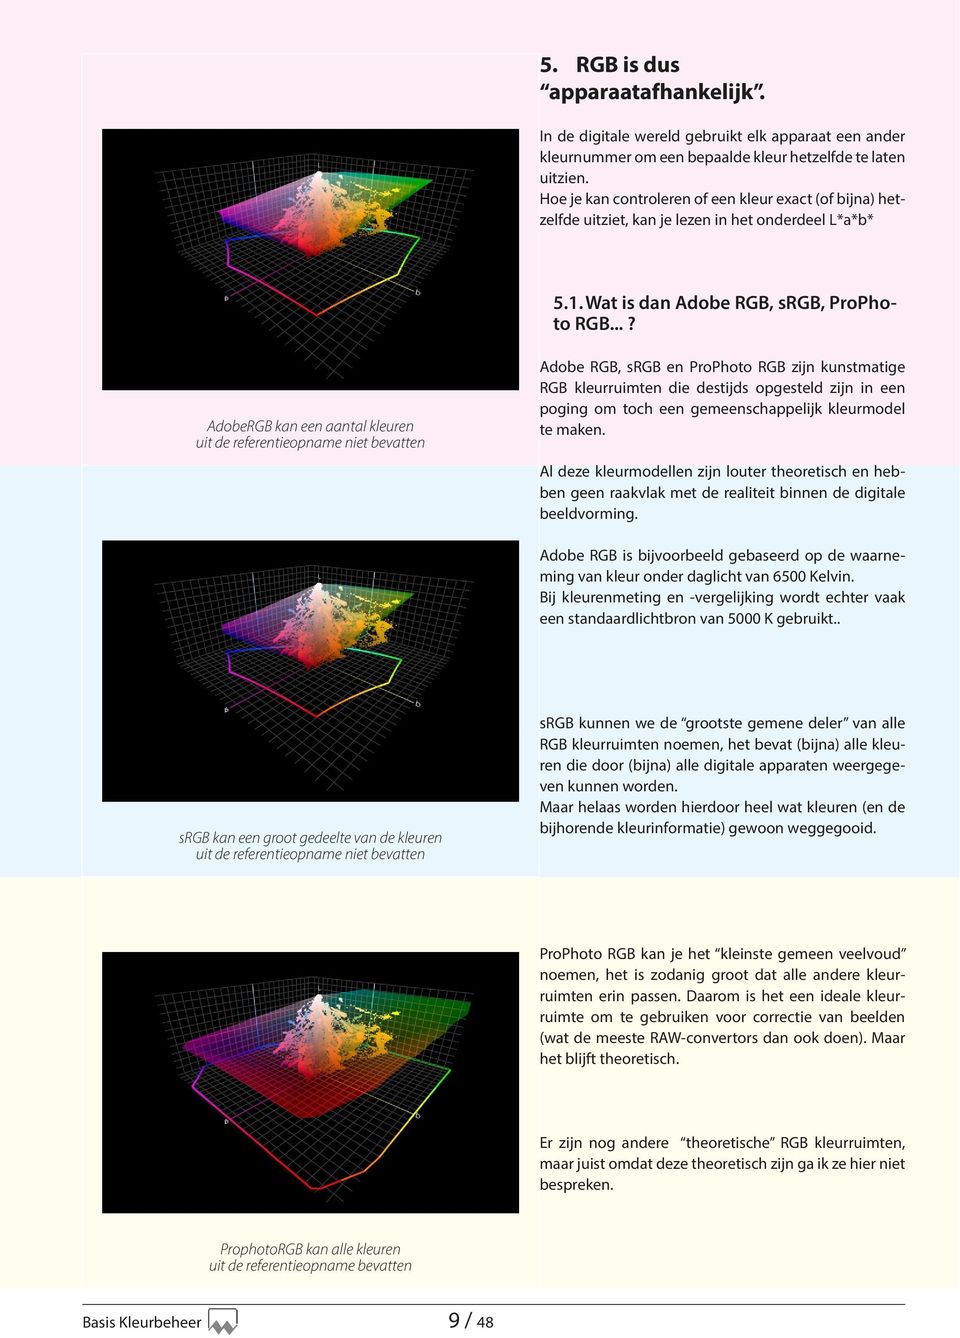 ..? AdobeRGB kan een aantal kleuren uit de referentieopname niet bevatten Adobe RGB, srgb en ProPhoto RGB zijn kunstmatige RGB kleurruimten die destijds opgesteld zijn in een poging om toch een